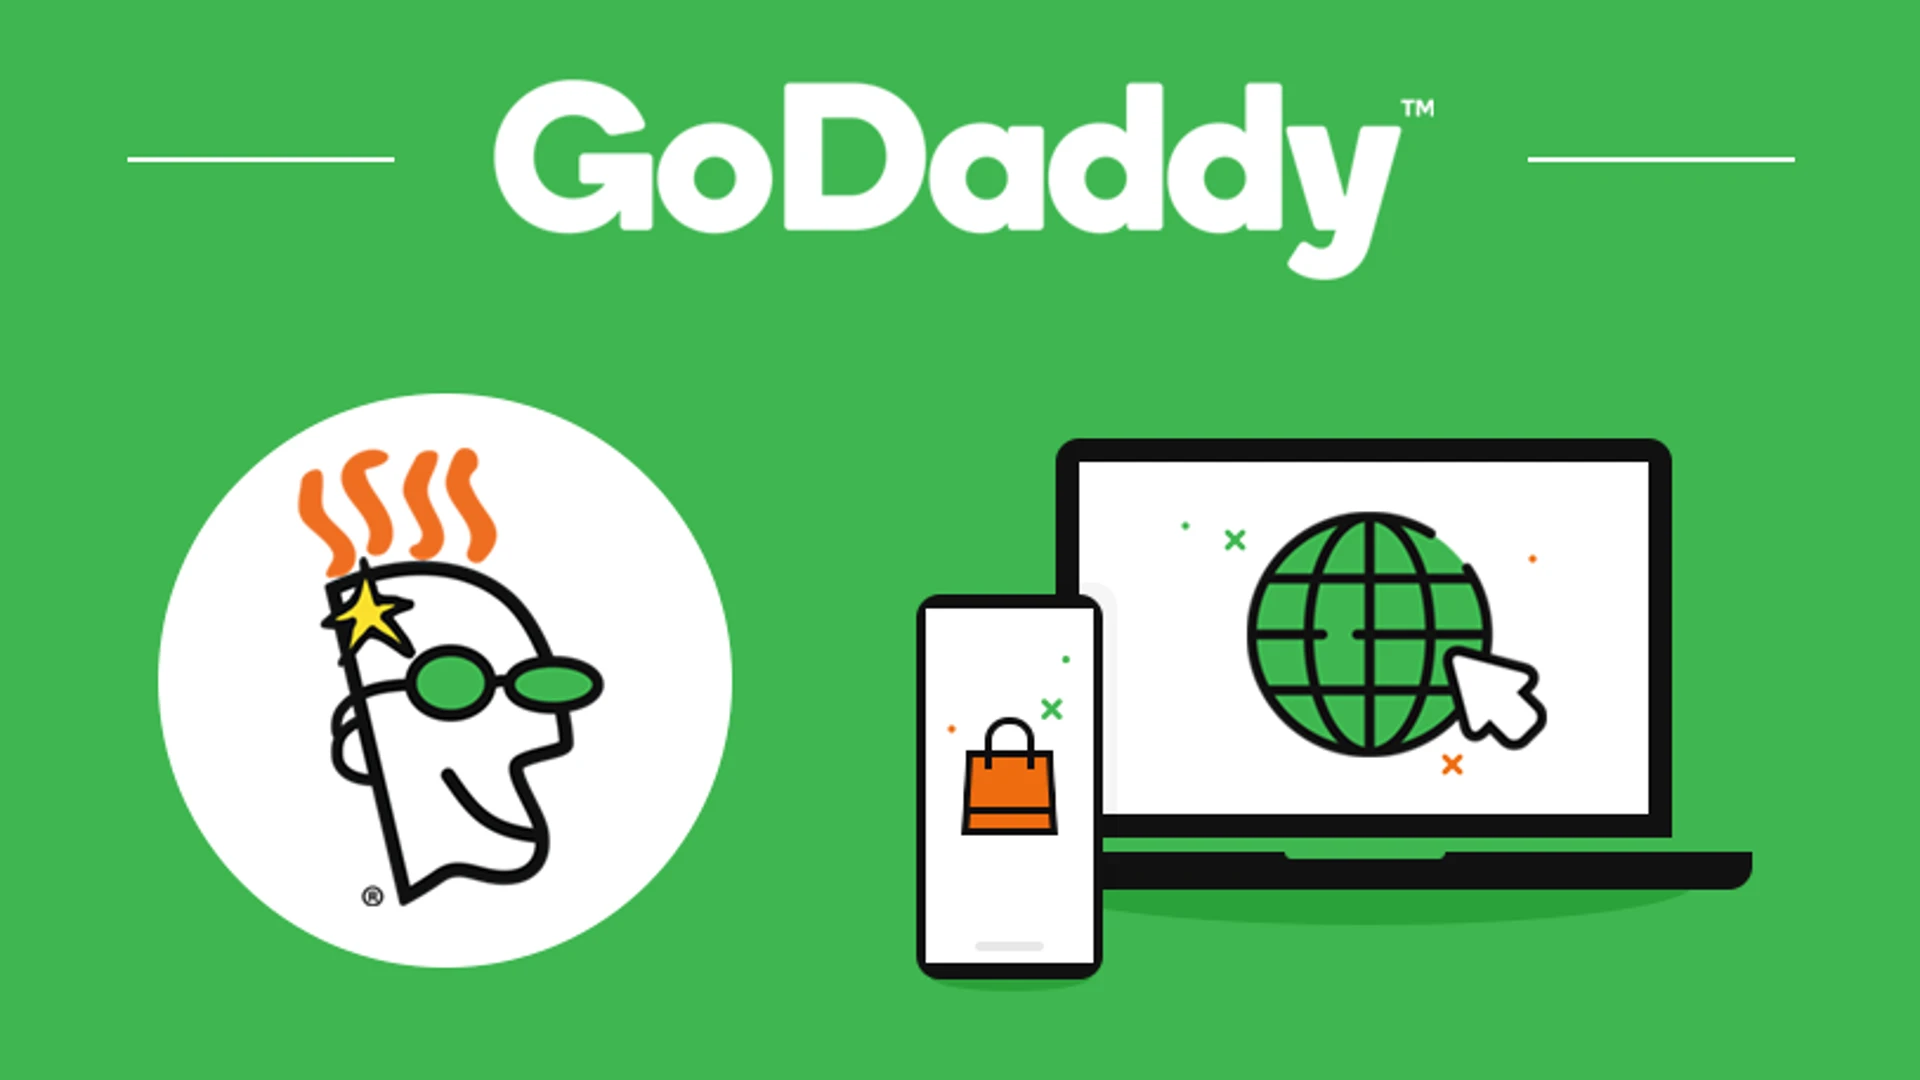 Godaddy Free Domain